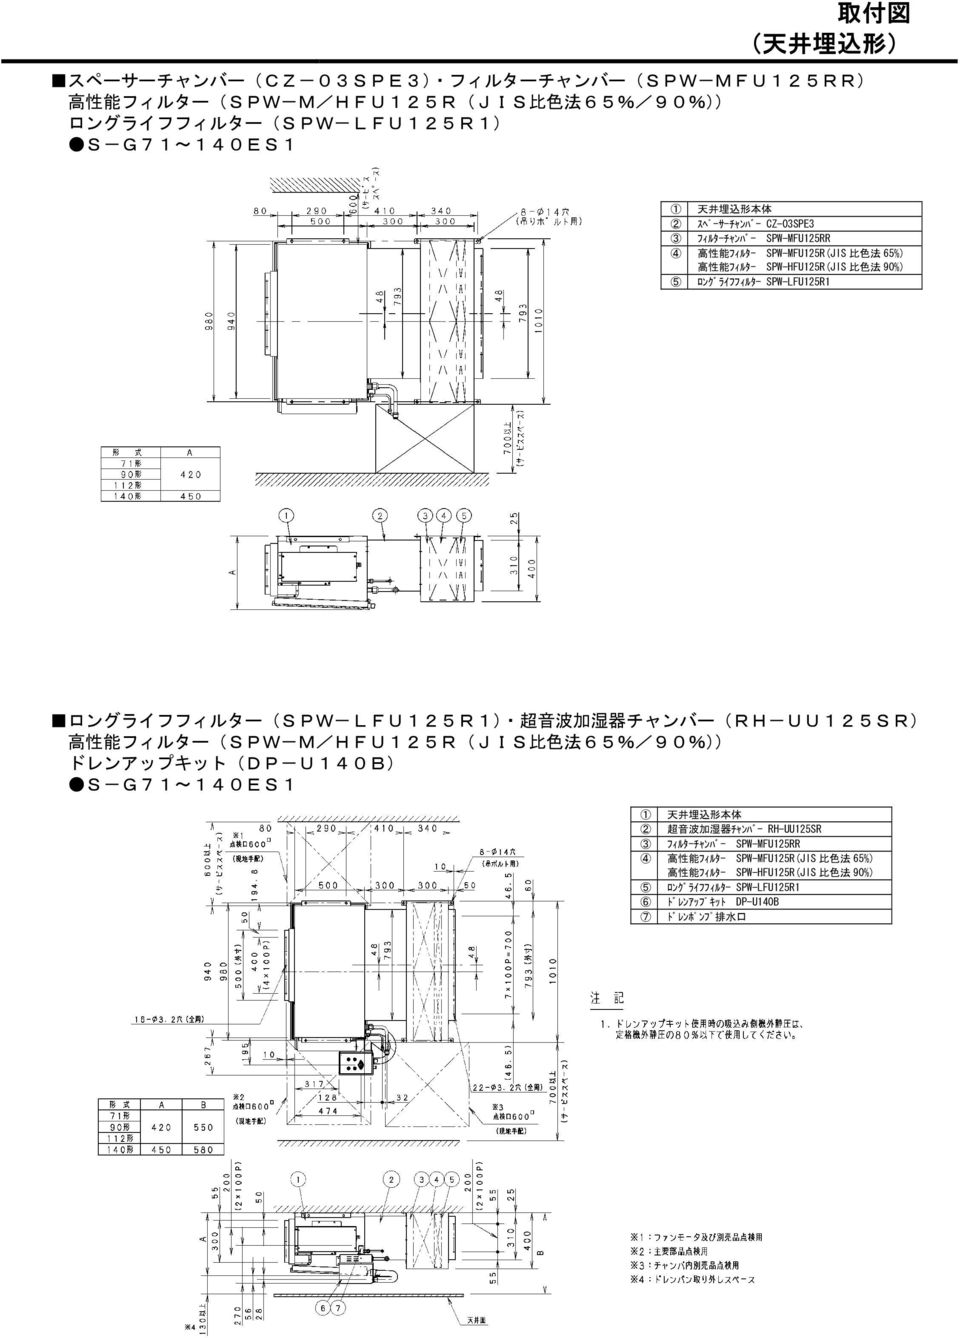 ロングライフフィルター(SPW-LFU125R1) 超 音 波 加 湿 器 チャンバー(RH-UU125SR) 高 性 能 フィルター(SPW-M/HFU125R(JIS 比 色 法 65%/90%)) ドレンアップキット(DP-U140B) S-G71~140ES1 1 天 井 埋 込 形 本 体 2 超 音 波 加 湿 器